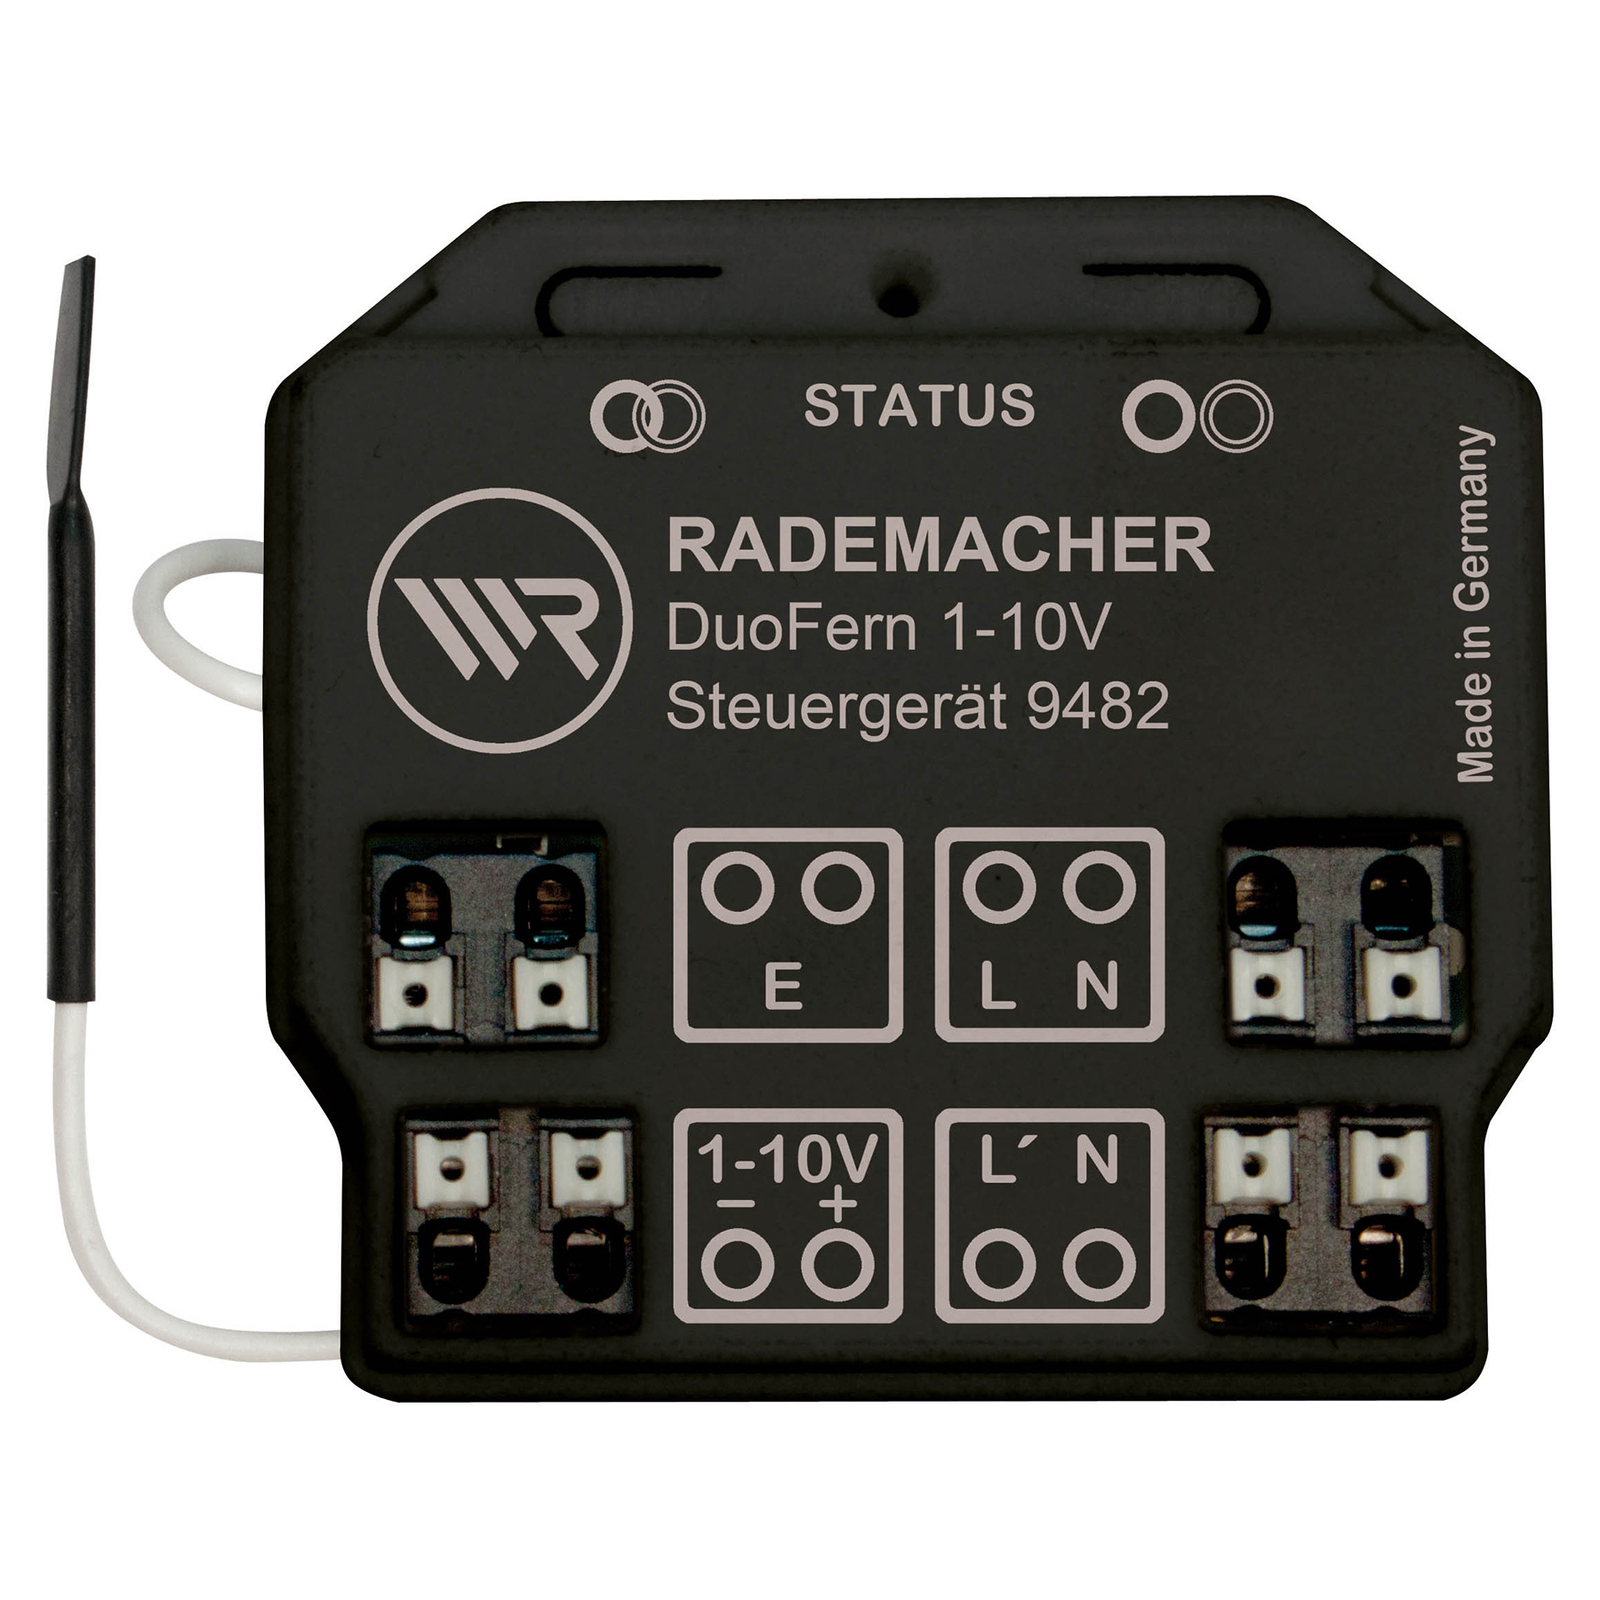 Rademacher DuoFern 1-10 V-os vezérlőegység dimmer